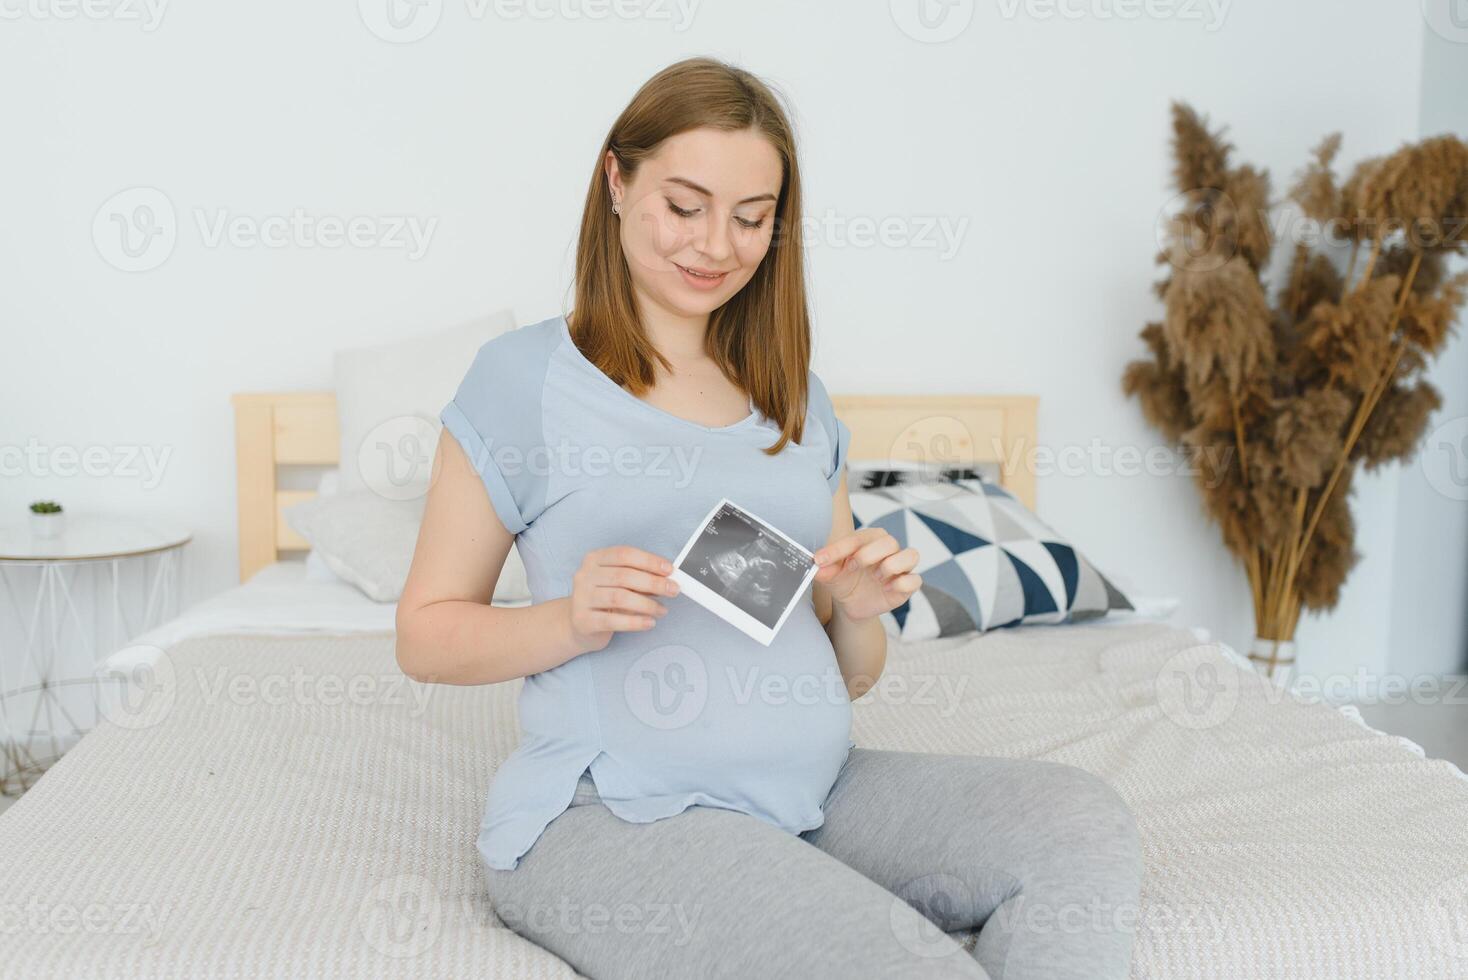 schwanger Frau suchen beim ihr Baby Sonographie. glücklich erwartungsvoll Dame genießen zuerst Foto von ihr ungeboren Kind, vorwegnehmen ihr Zukunft Leben, Kopieren Raum